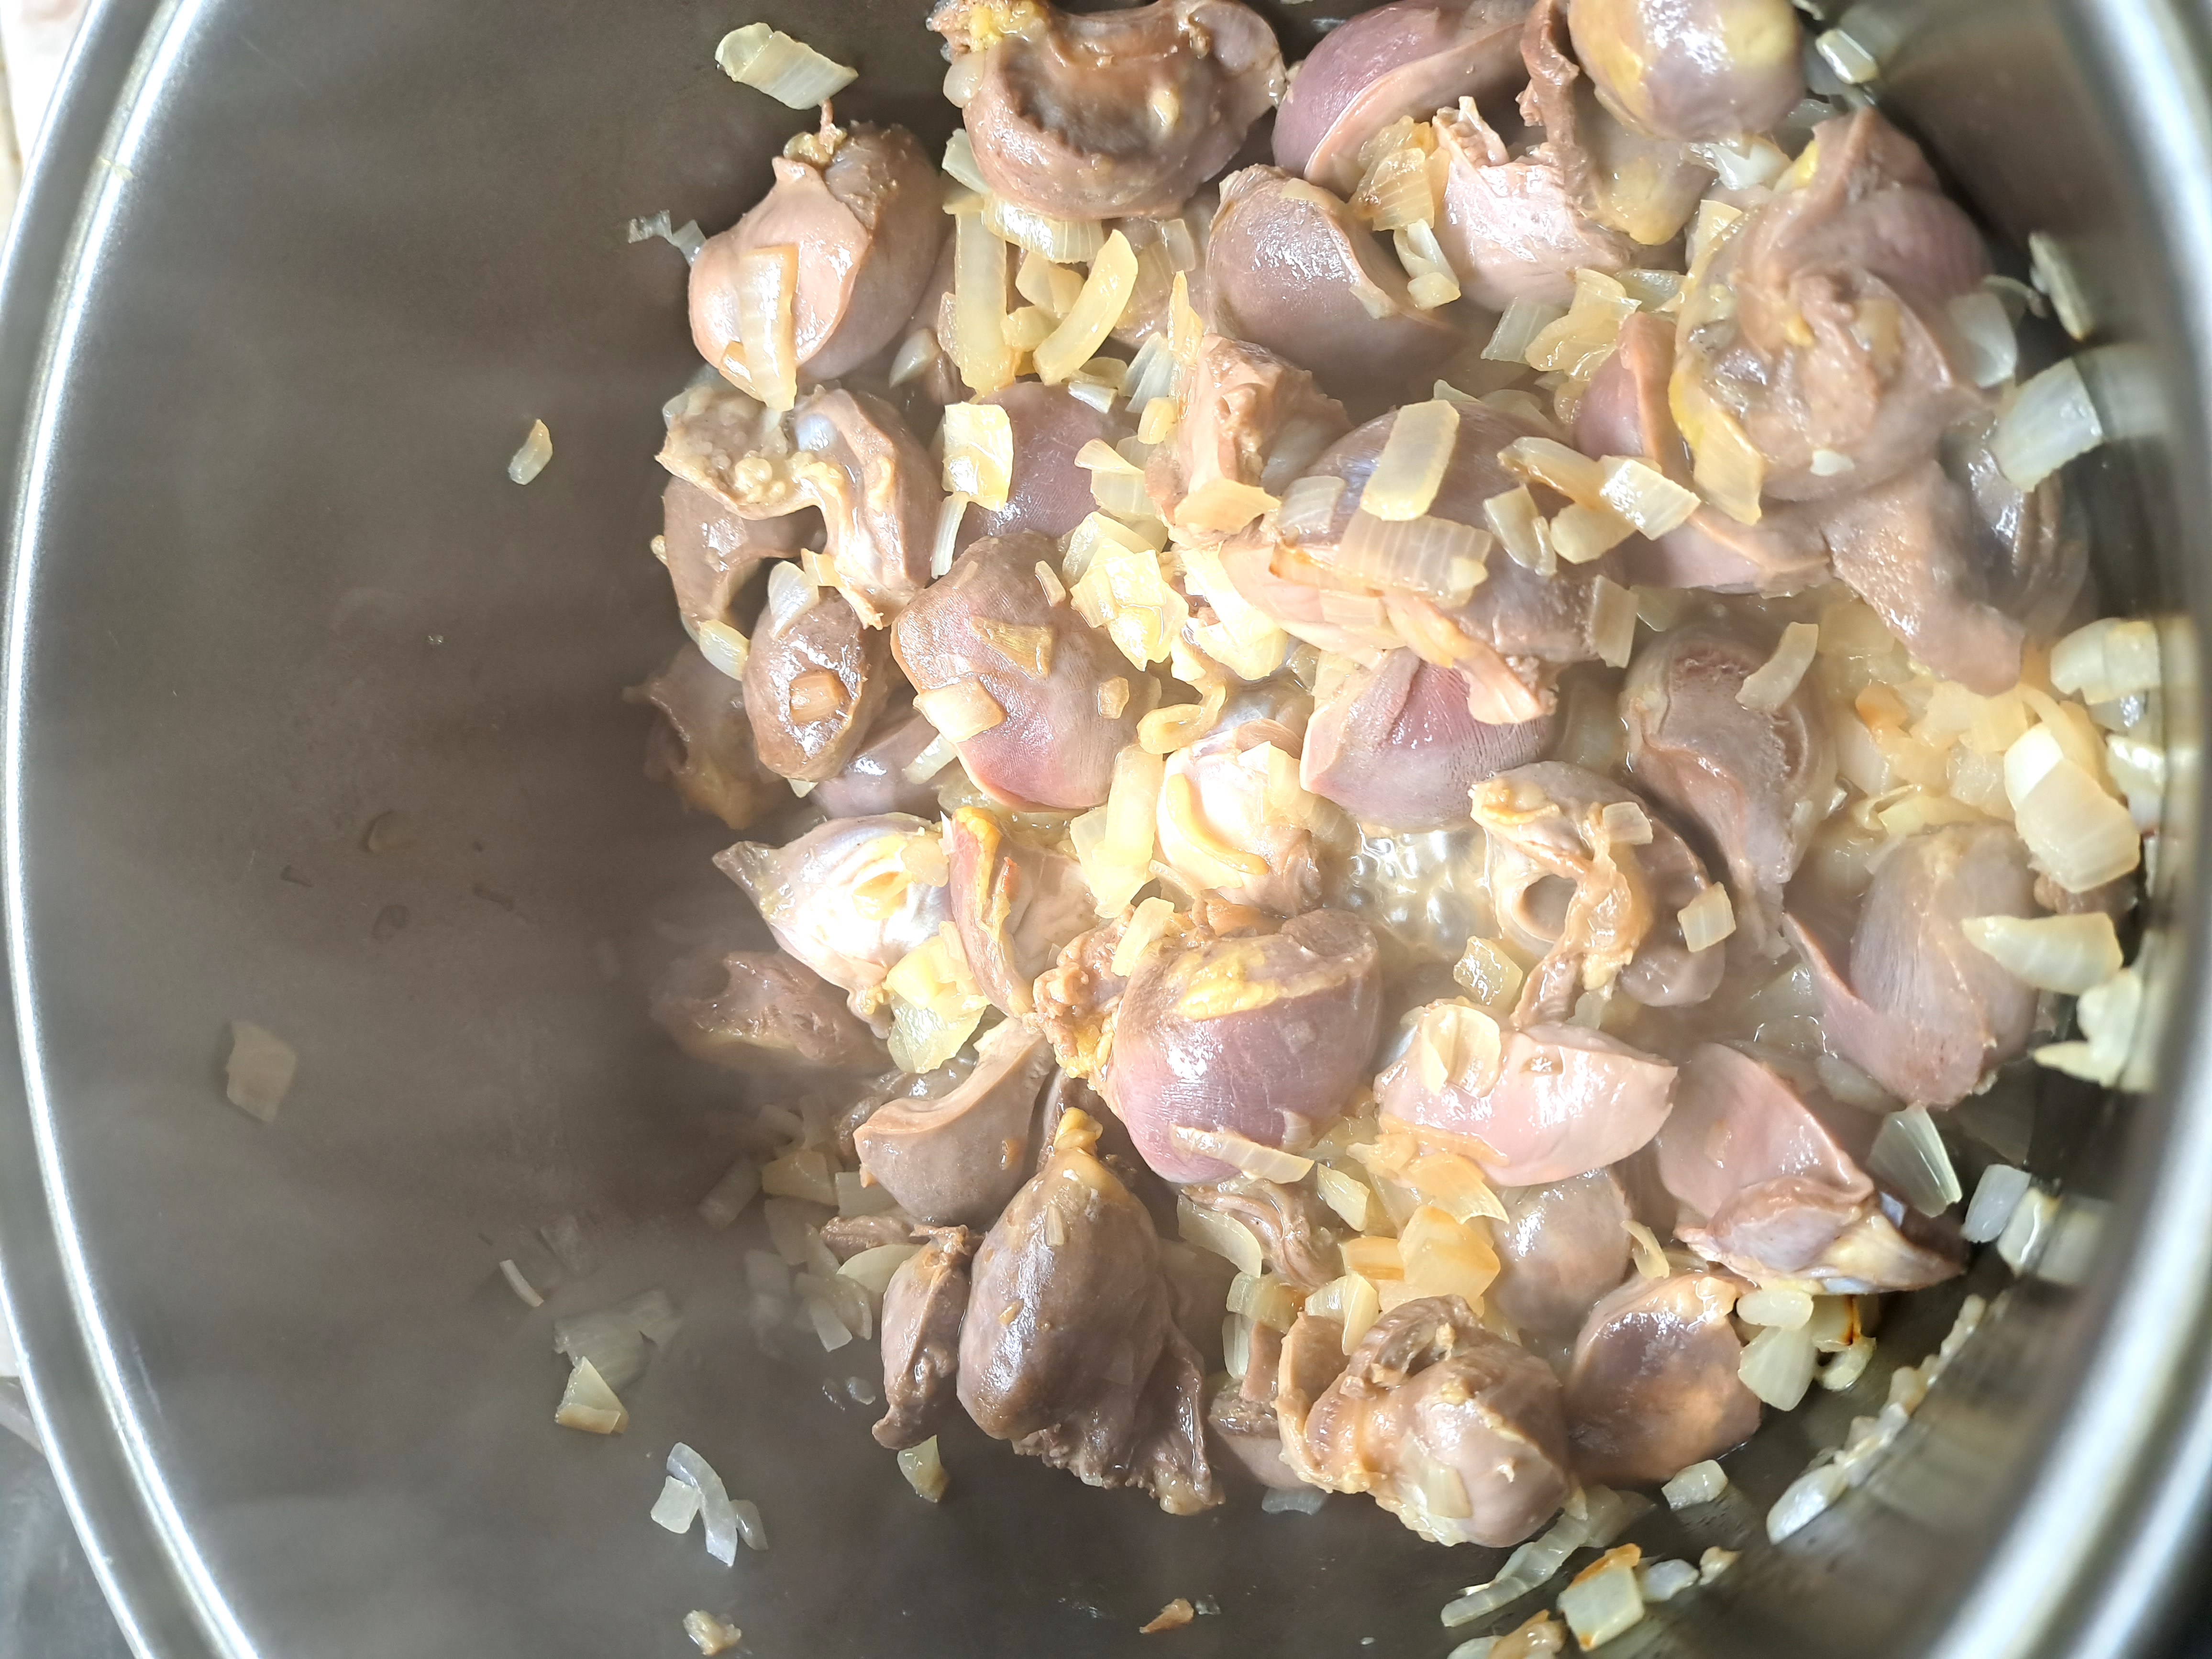 Простой рецепт приготовления куриных желудков в мультиварке Редмонд